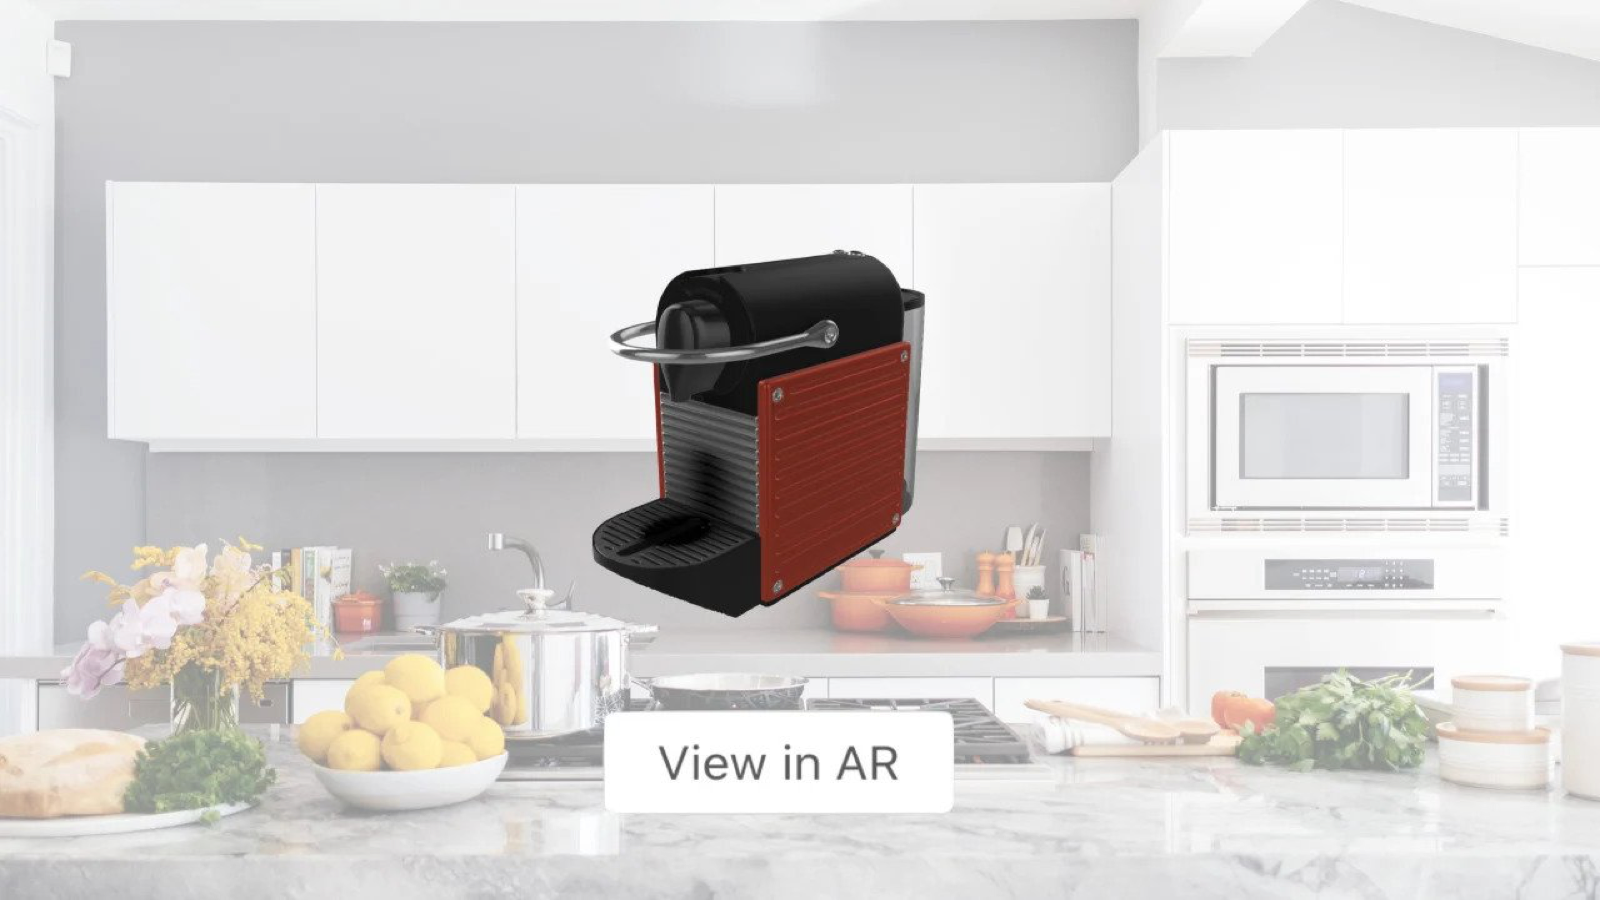 Permita que os compradores coloquem produtos em sua casa com AR